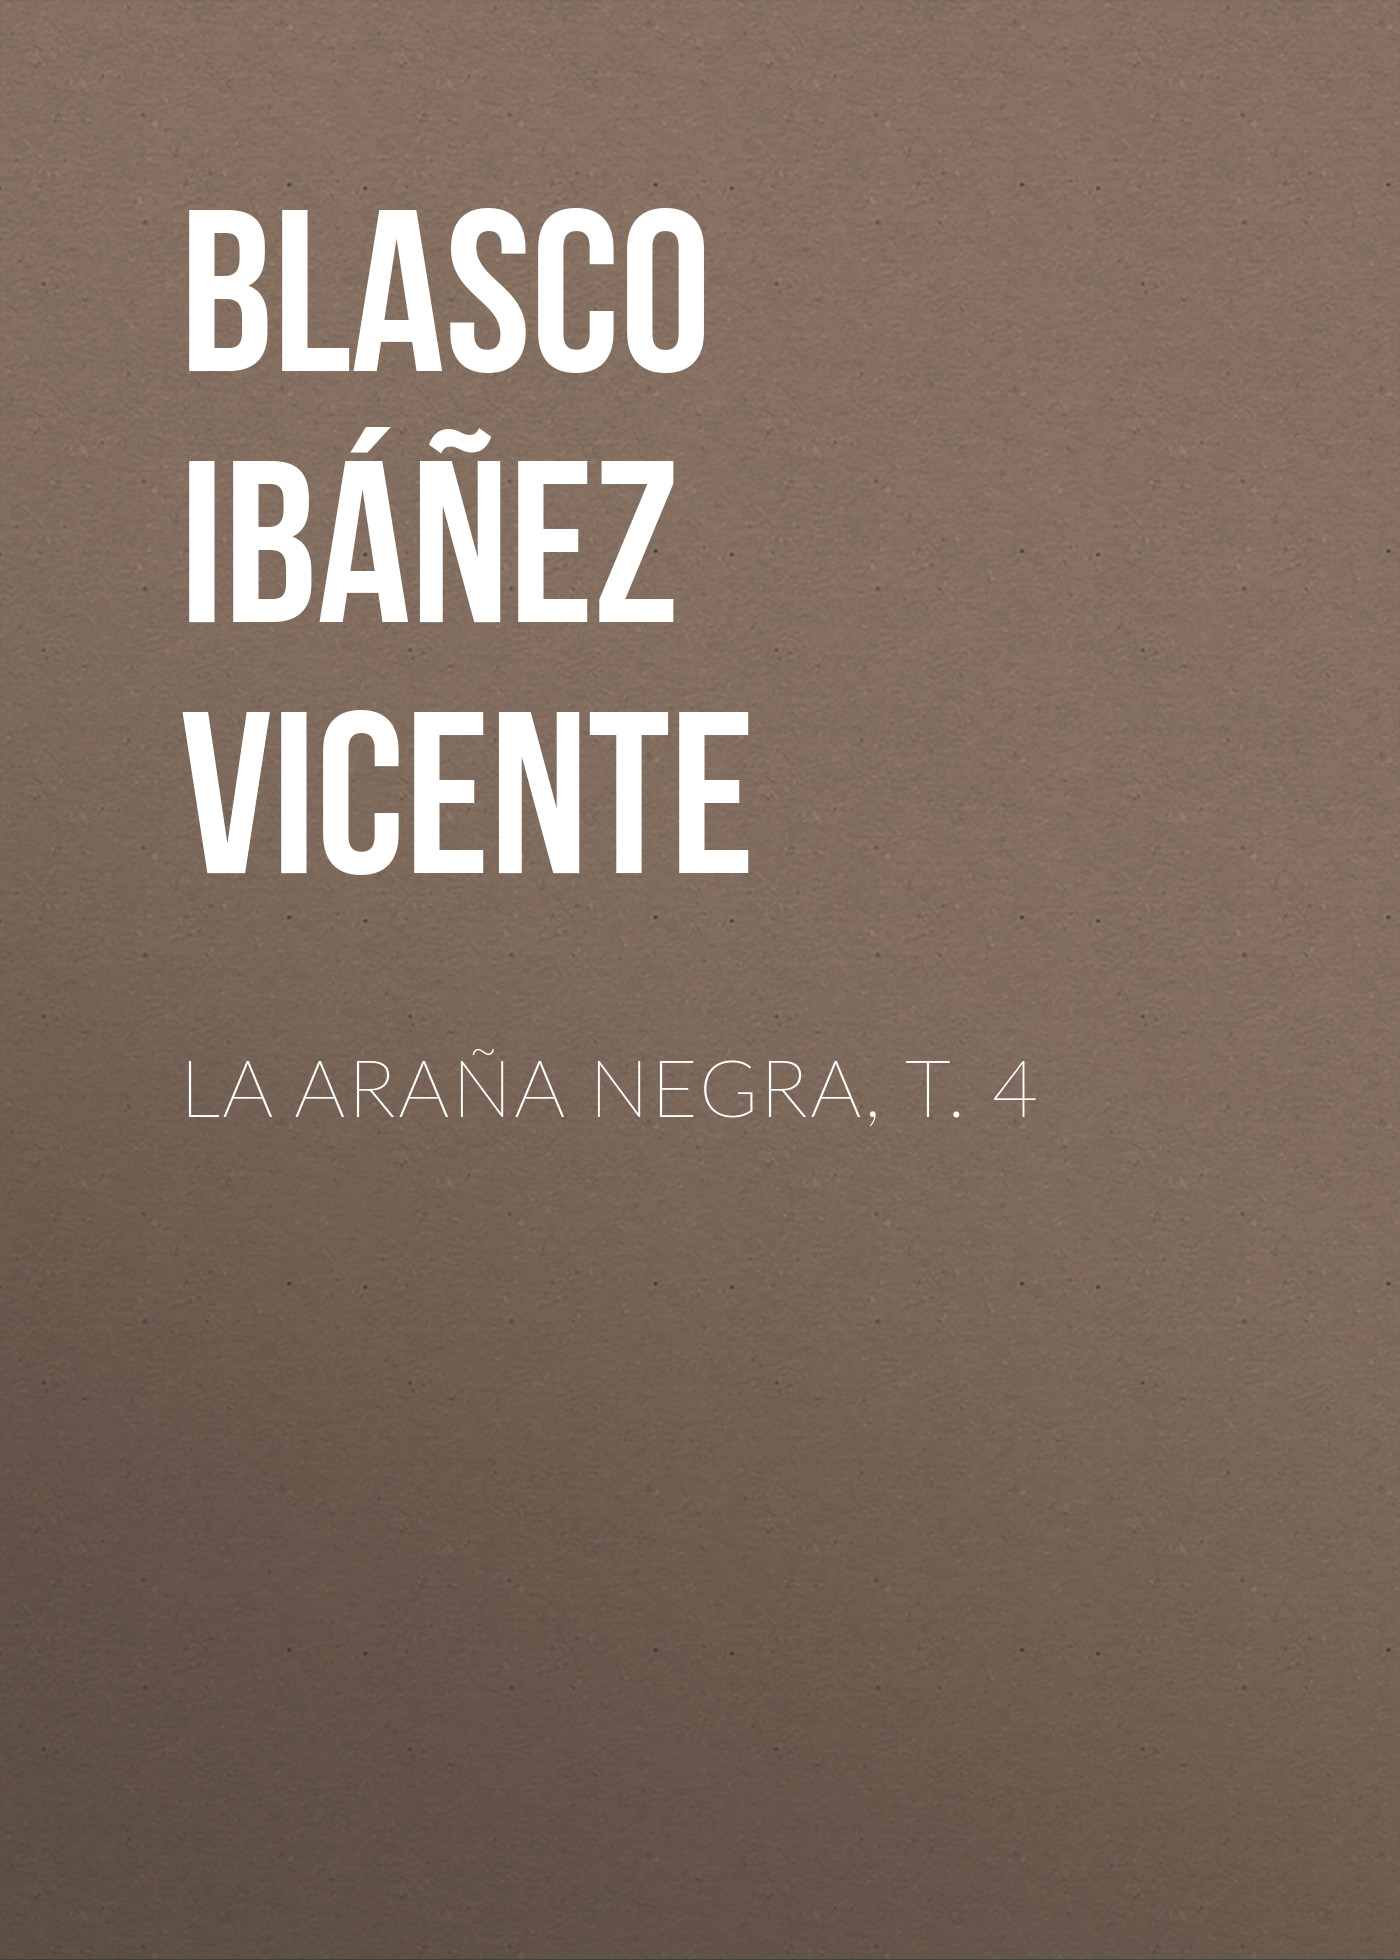 Книга La araña negra, t. 4 из серии , созданная Vicente Blasco Ibáñez, может относится к жанру Иностранные языки, Зарубежная старинная литература, Зарубежная классика. Стоимость электронной книги La araña negra, t. 4 с идентификатором 24178828 составляет 0.90 руб.